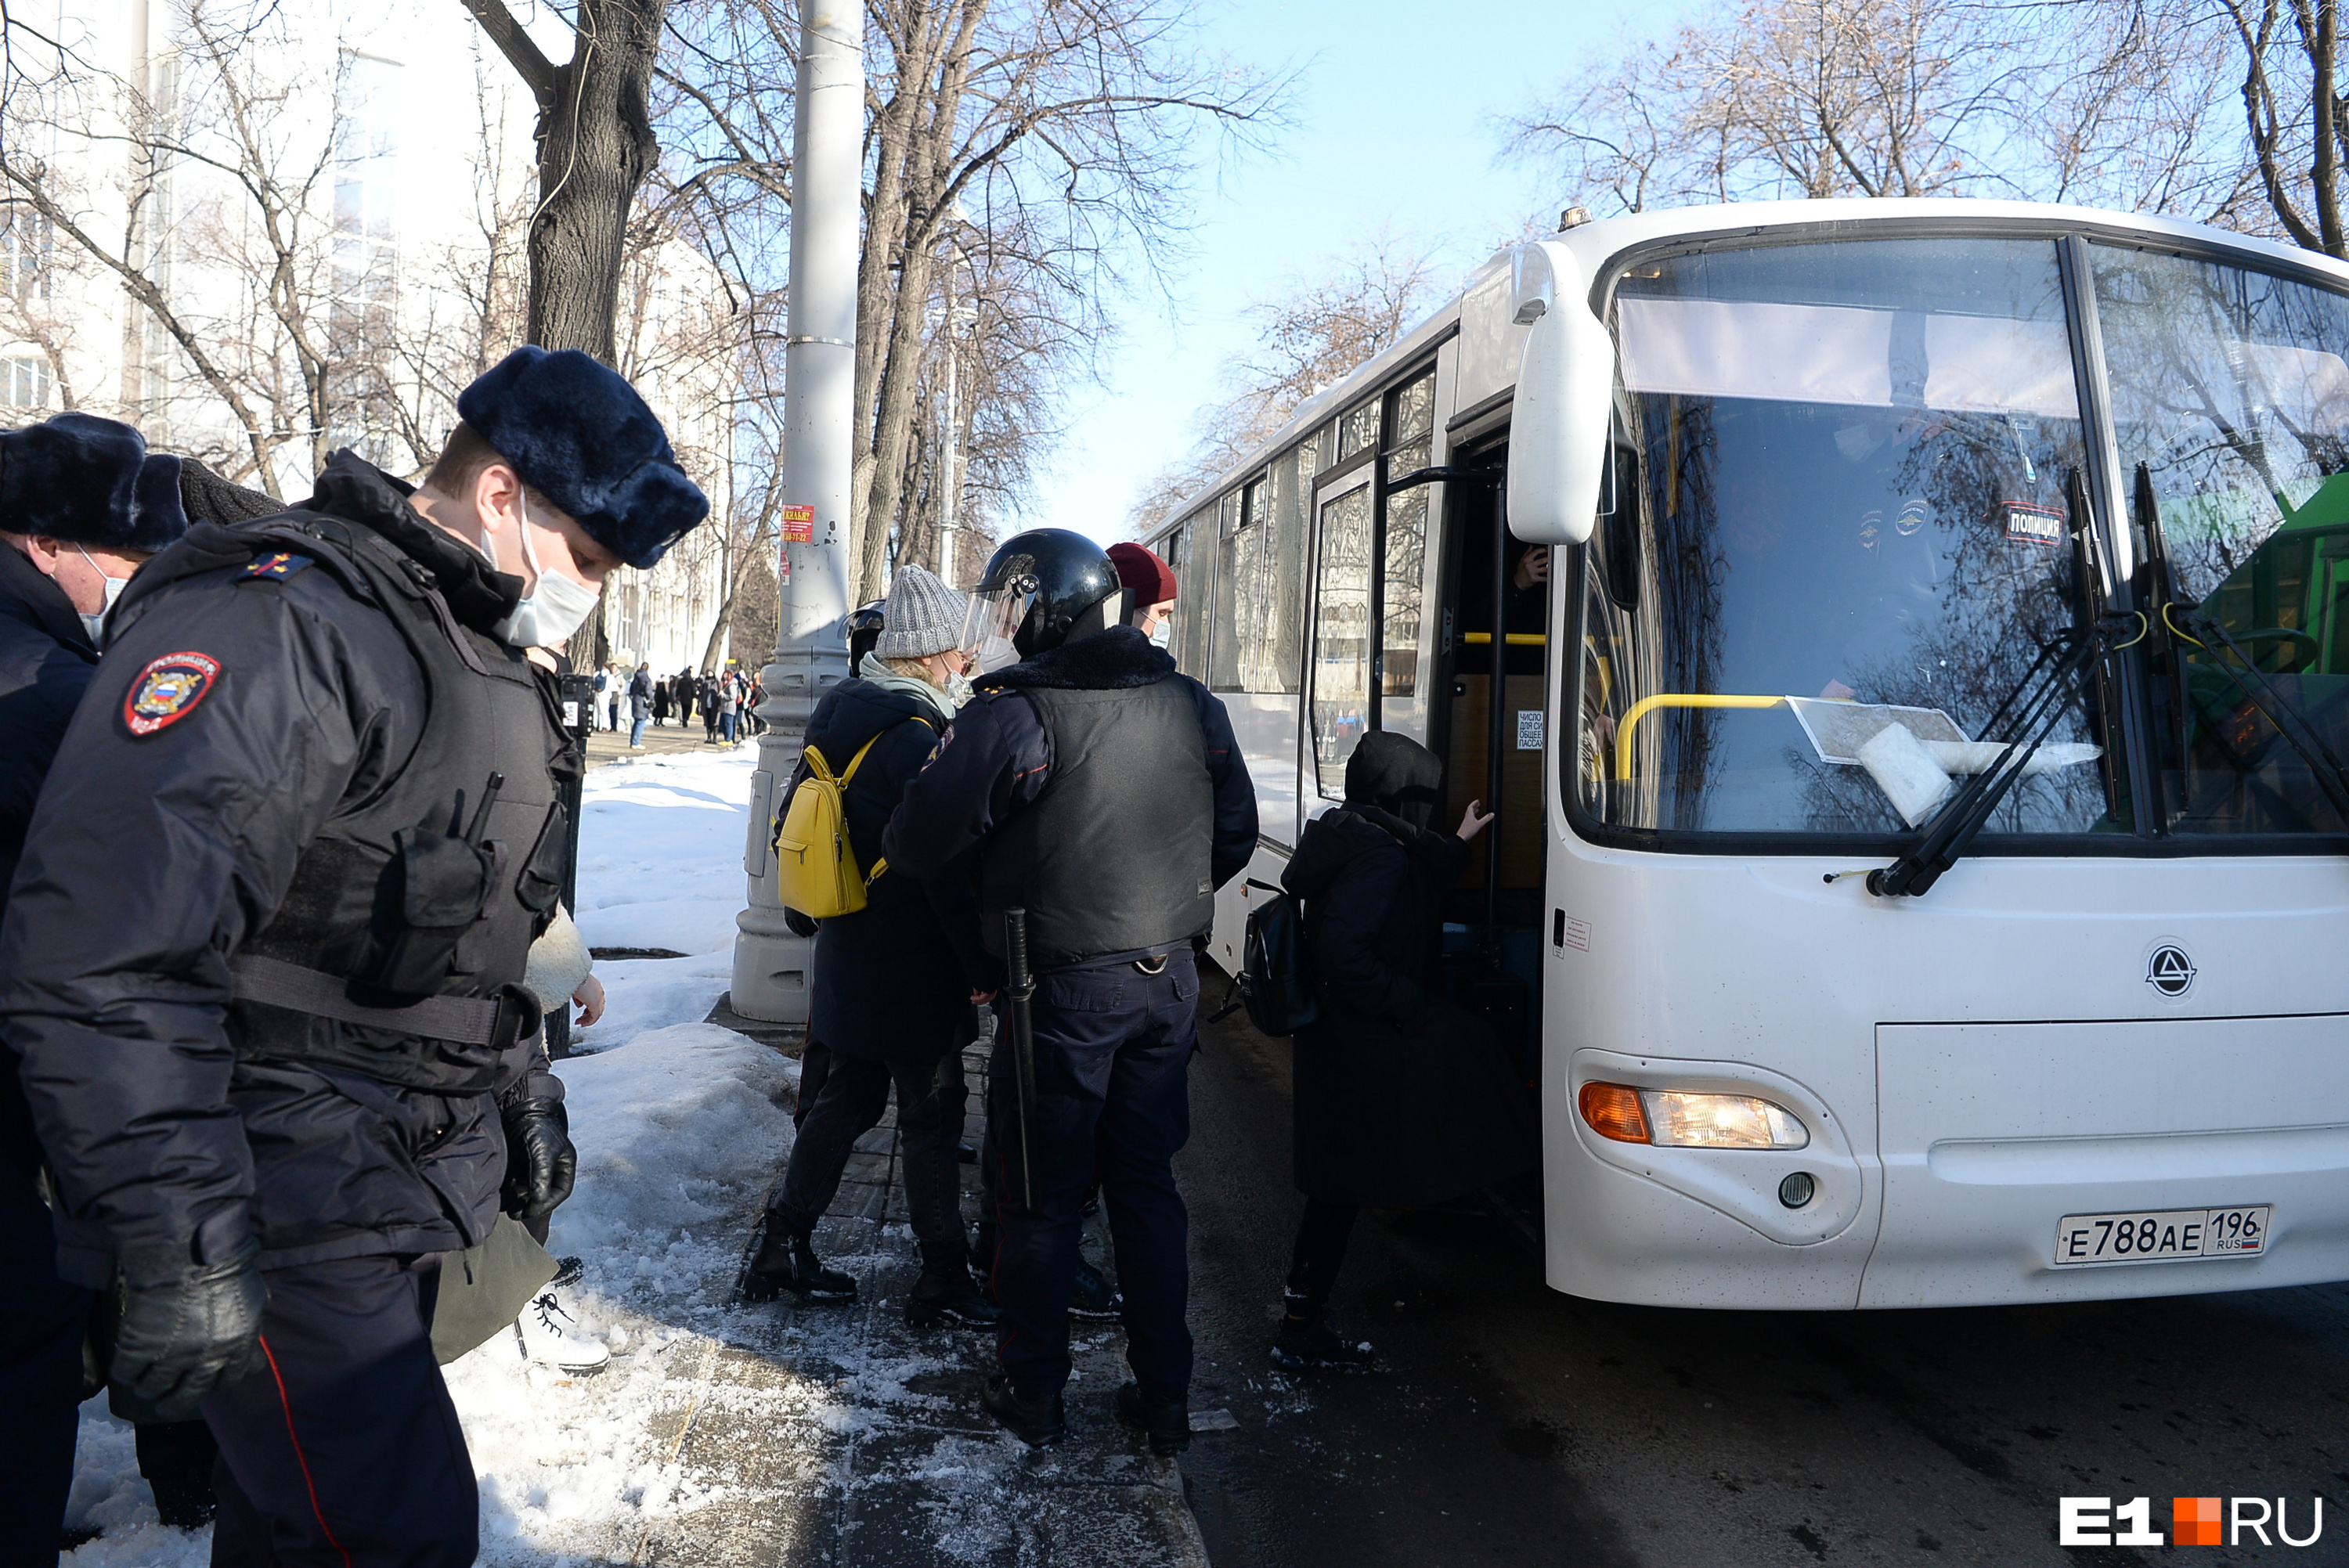 Каналы новости екатеринбурга. Автобус "полиция". Задержание в Екатеринбурге. Человек рядом с автобусом. Полицейский патруль автобус.